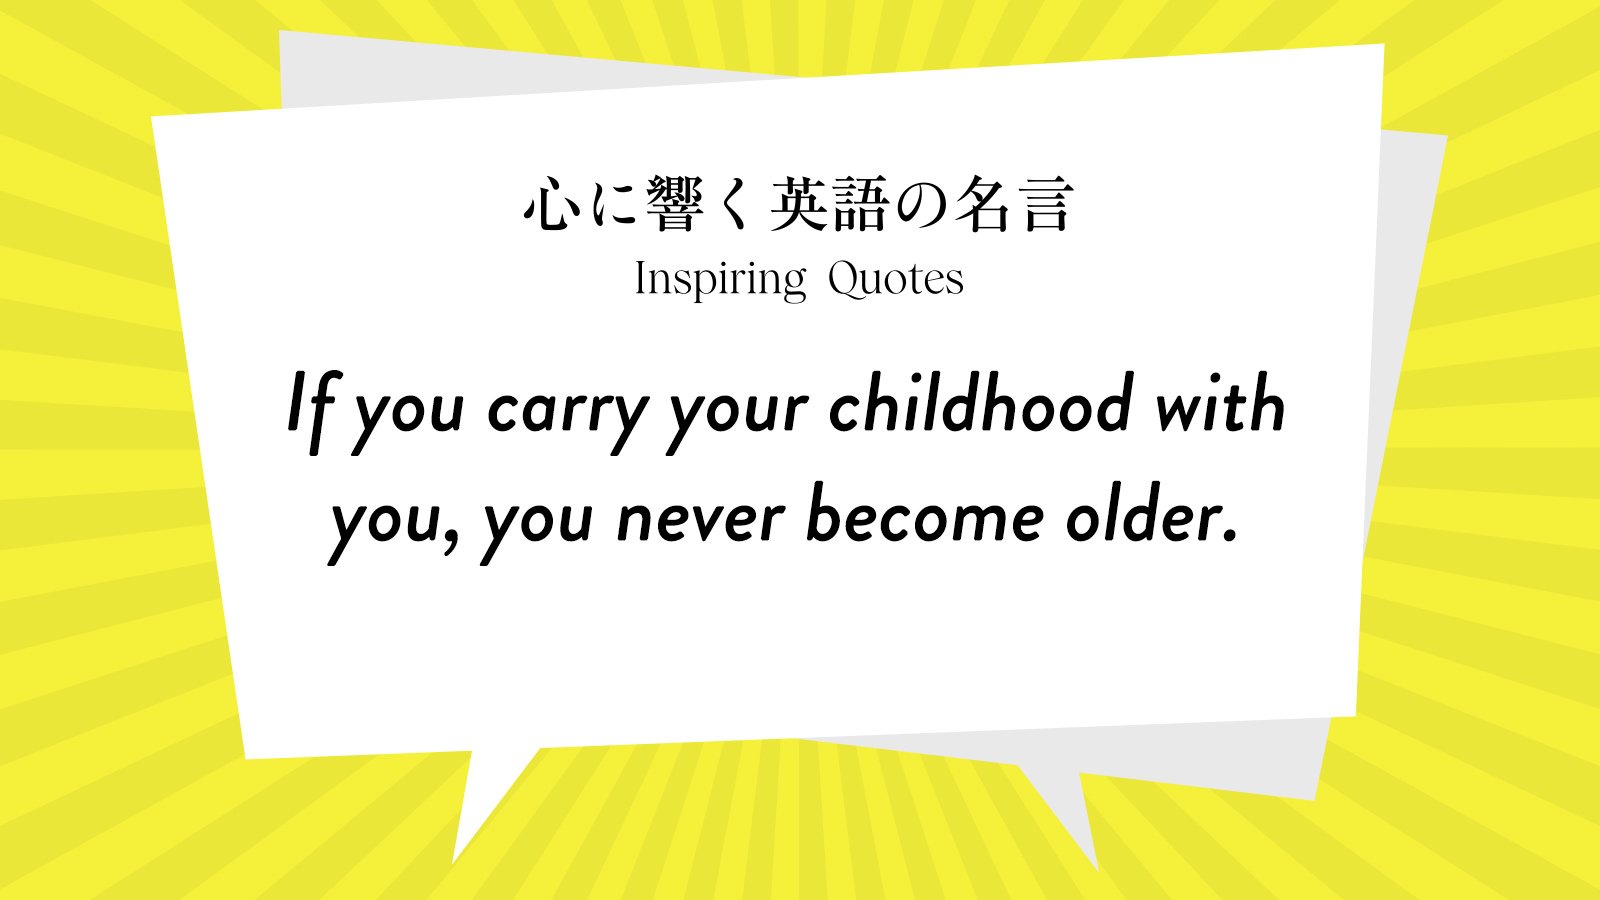 今週の名言 “If you carry your childhood with you, you never become older.” | Inspiring Quotes: 心に響く英語の名言